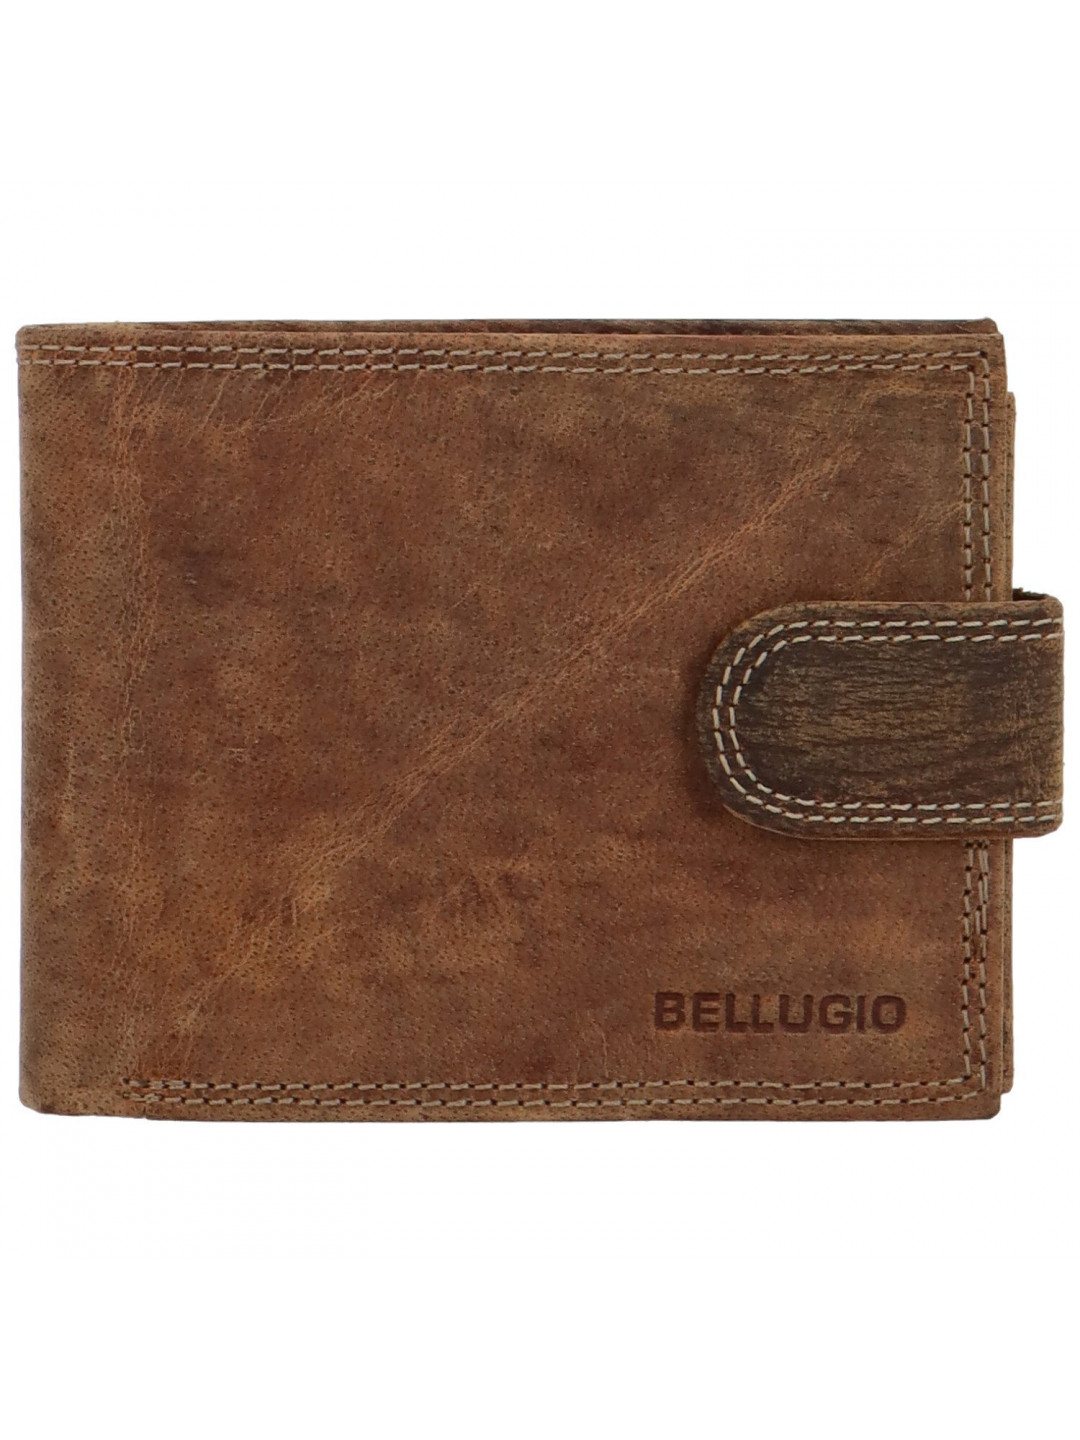 Pánská kožená peněženka světle hnědá – Bellugio Santiago